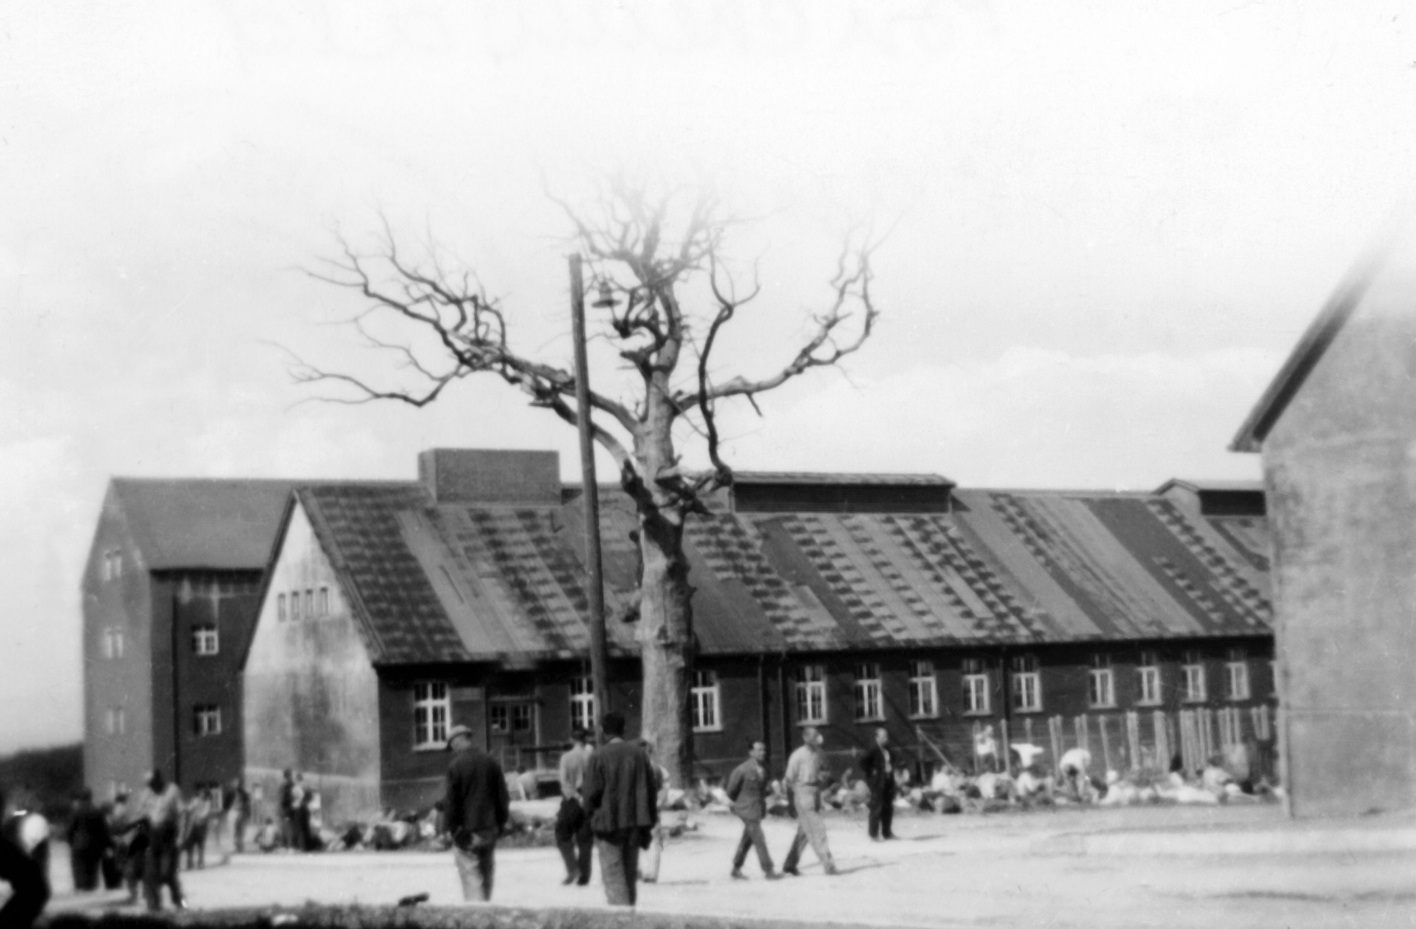 Häftlinge laufen auf der Lagerstraße. Blick auf die Goethe-Eiche. Im Hintergrund die Wäscherei, dahinter das Kammergebäude. Ganz rechts im Vordergrund das Gebäude der Häftlingsküche.